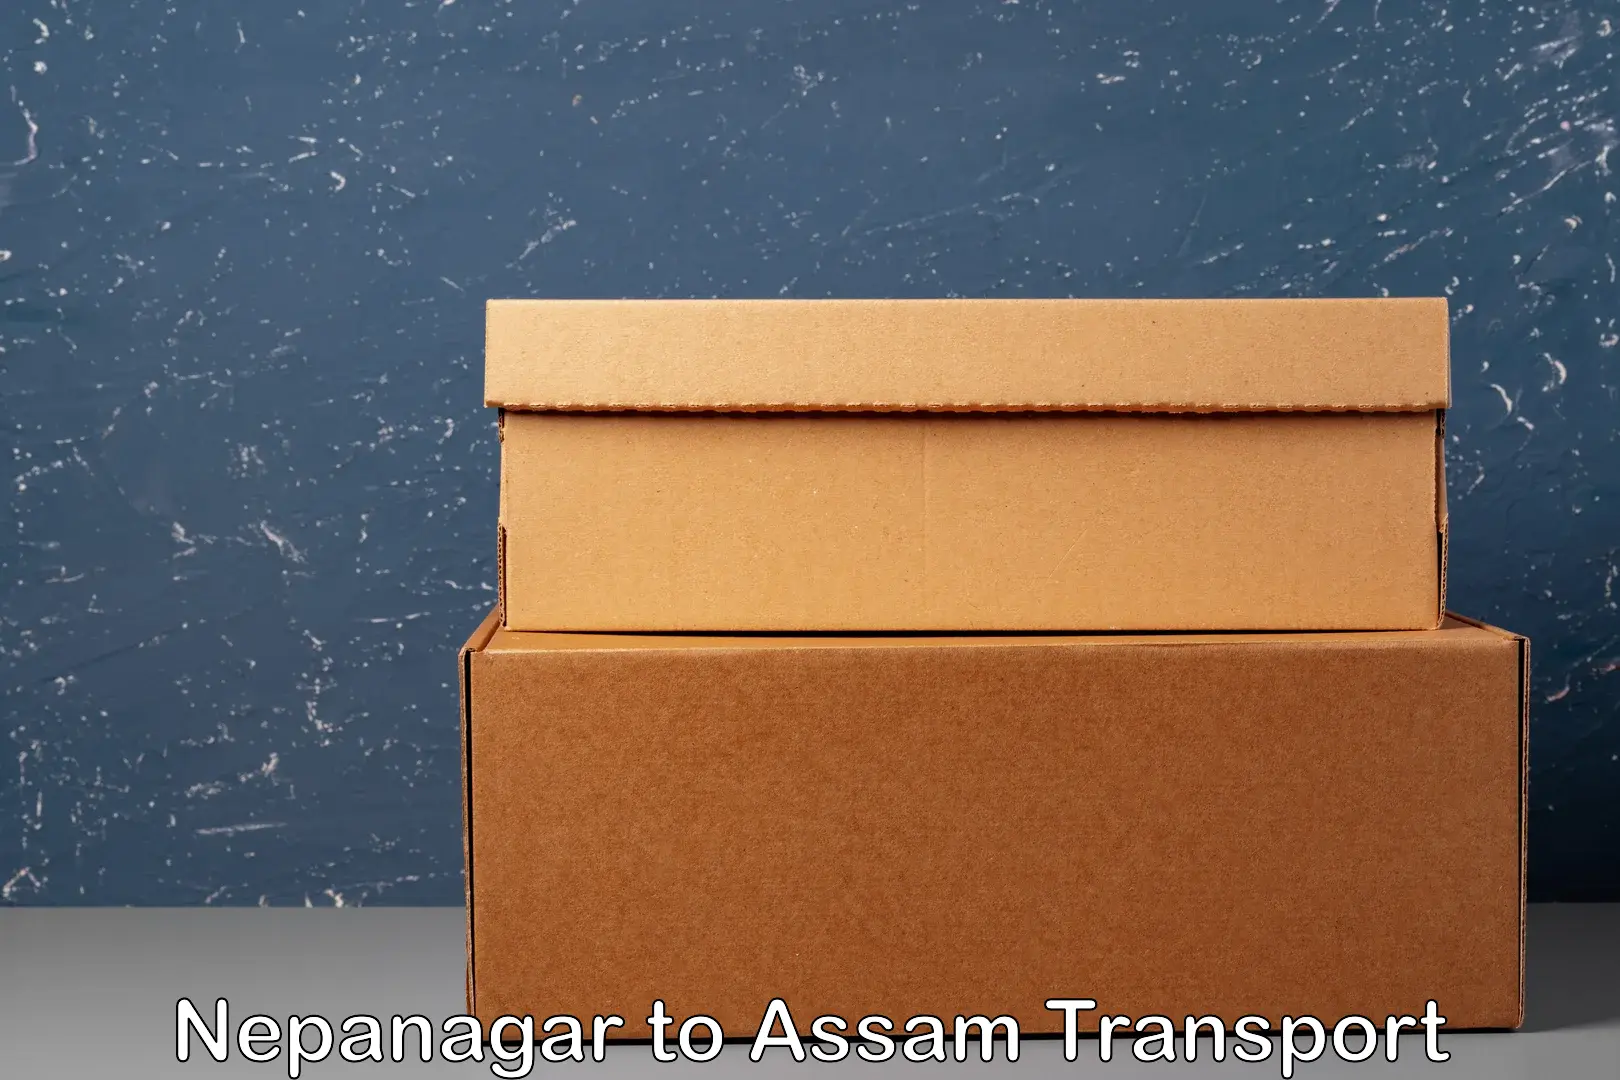 Online transport service Nepanagar to Assam